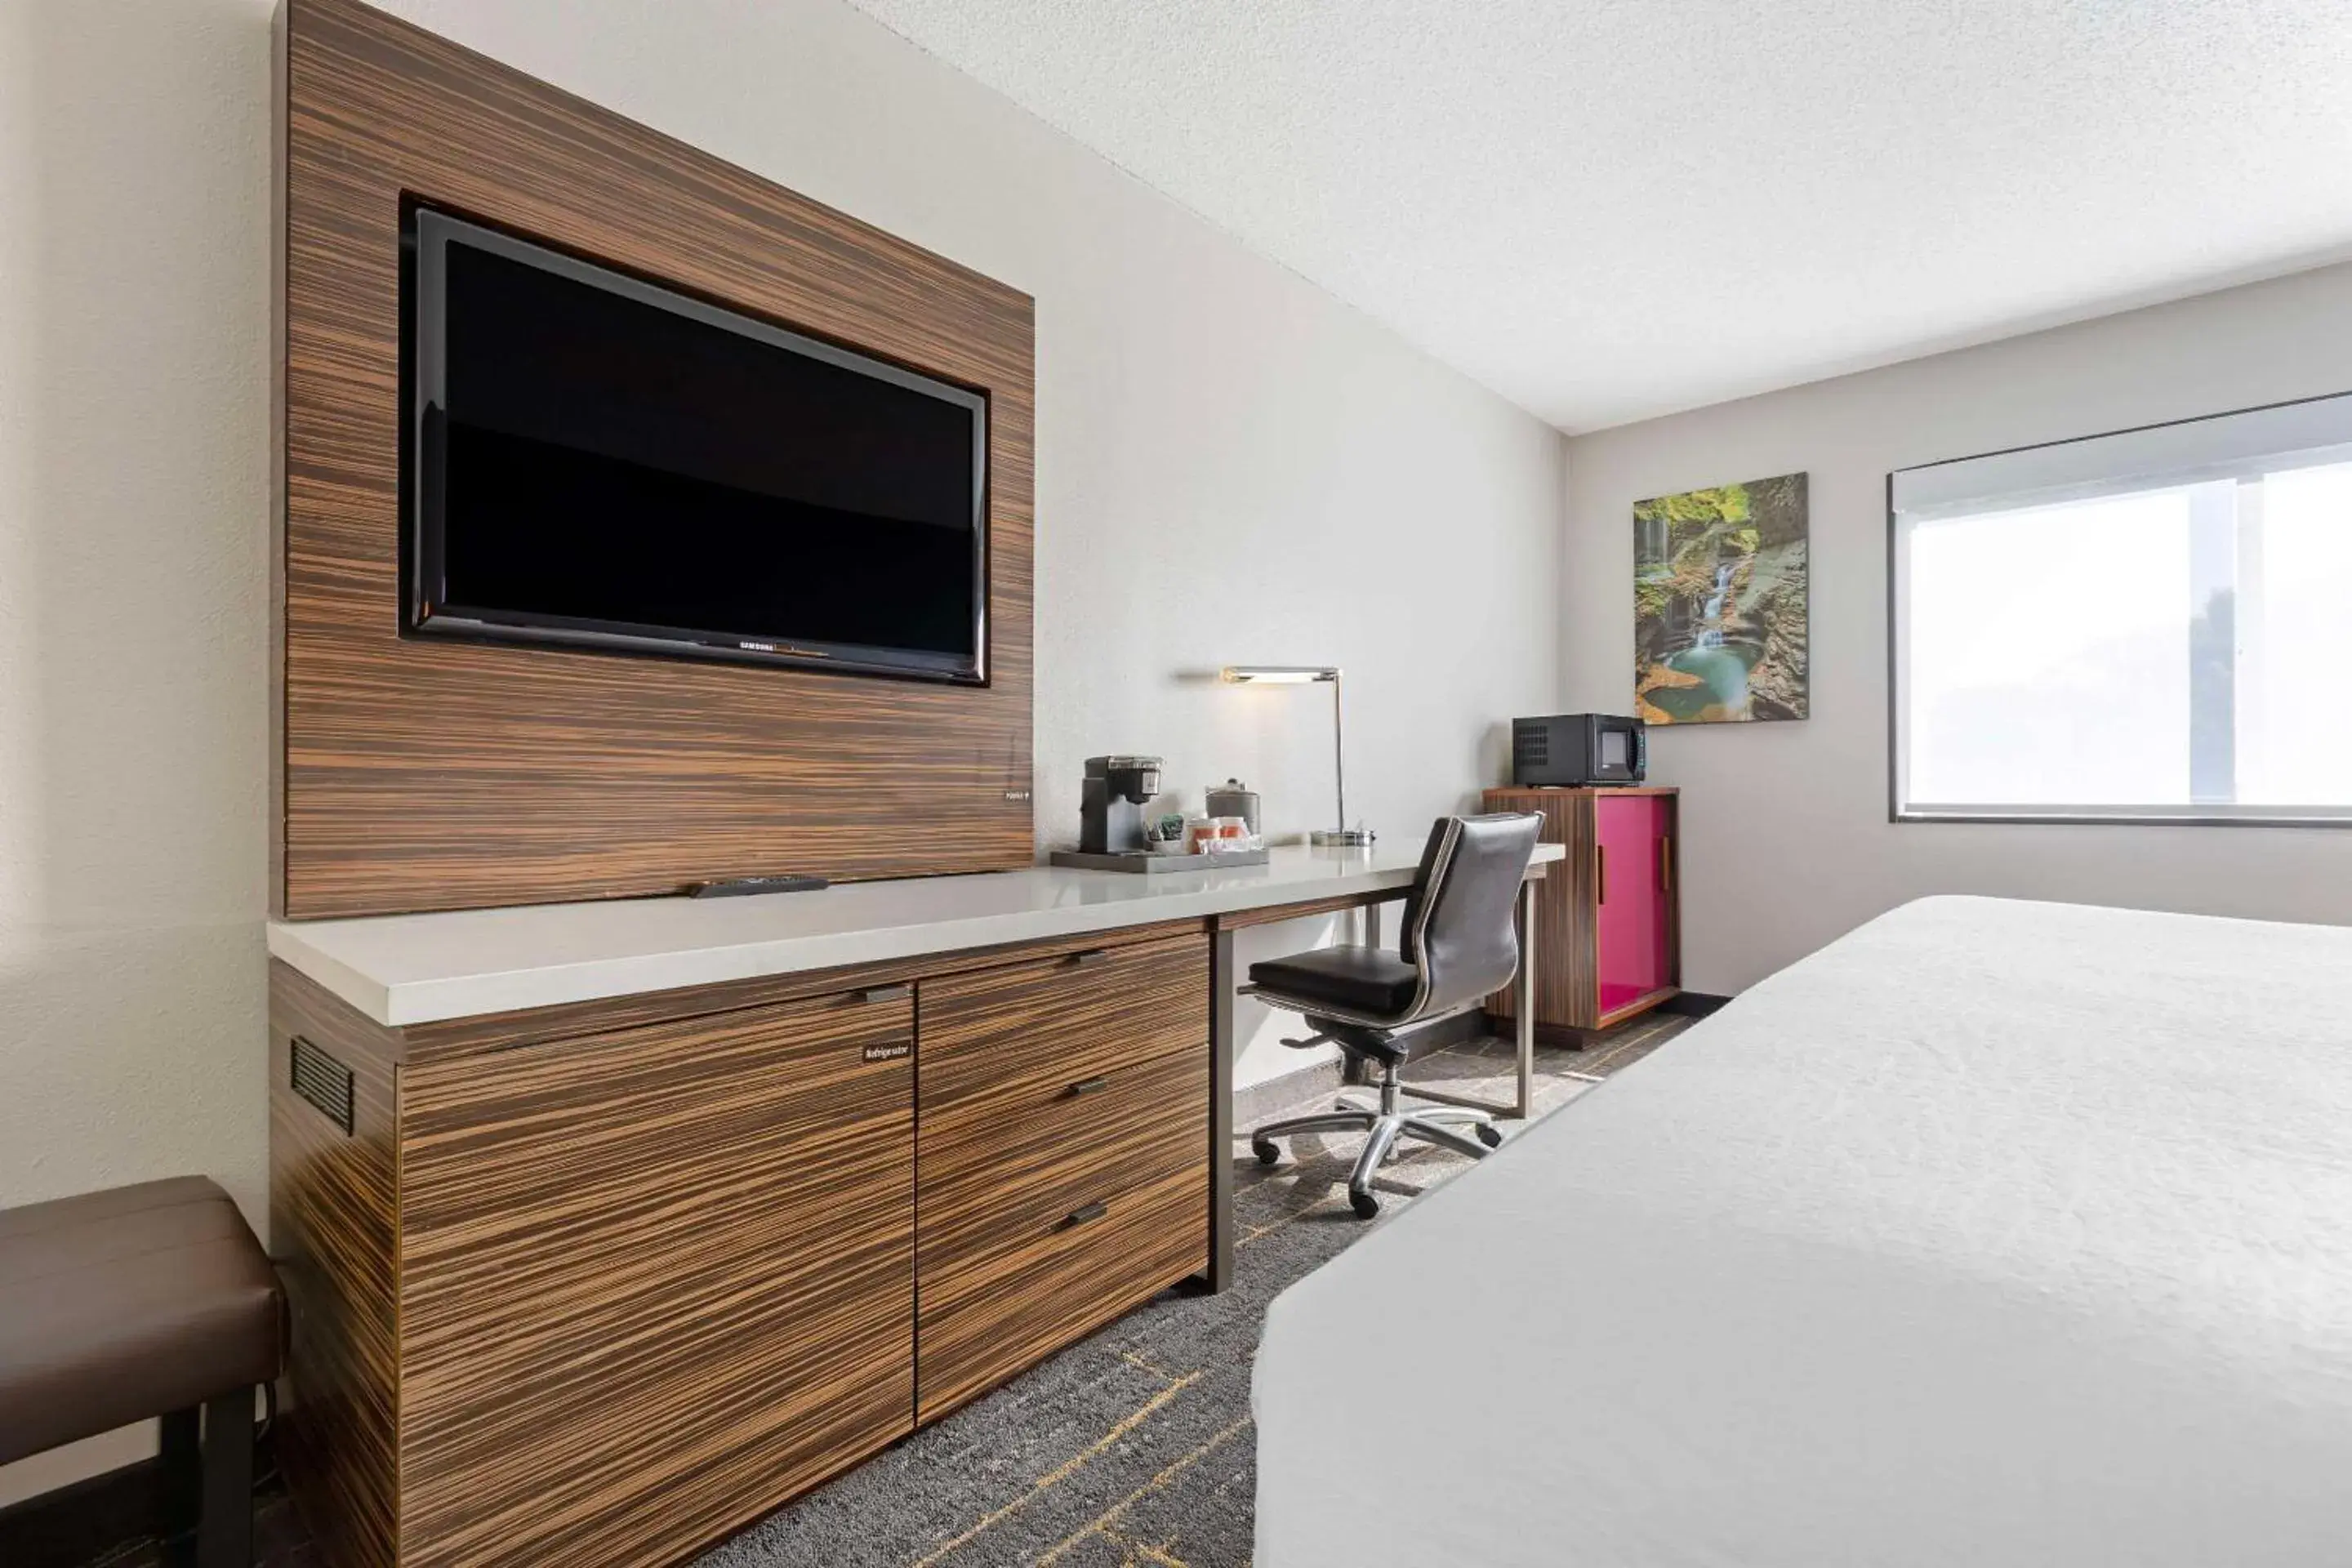 Bedroom, TV/Entertainment Center in Quality Inn near Finger Lakes and Seneca Falls